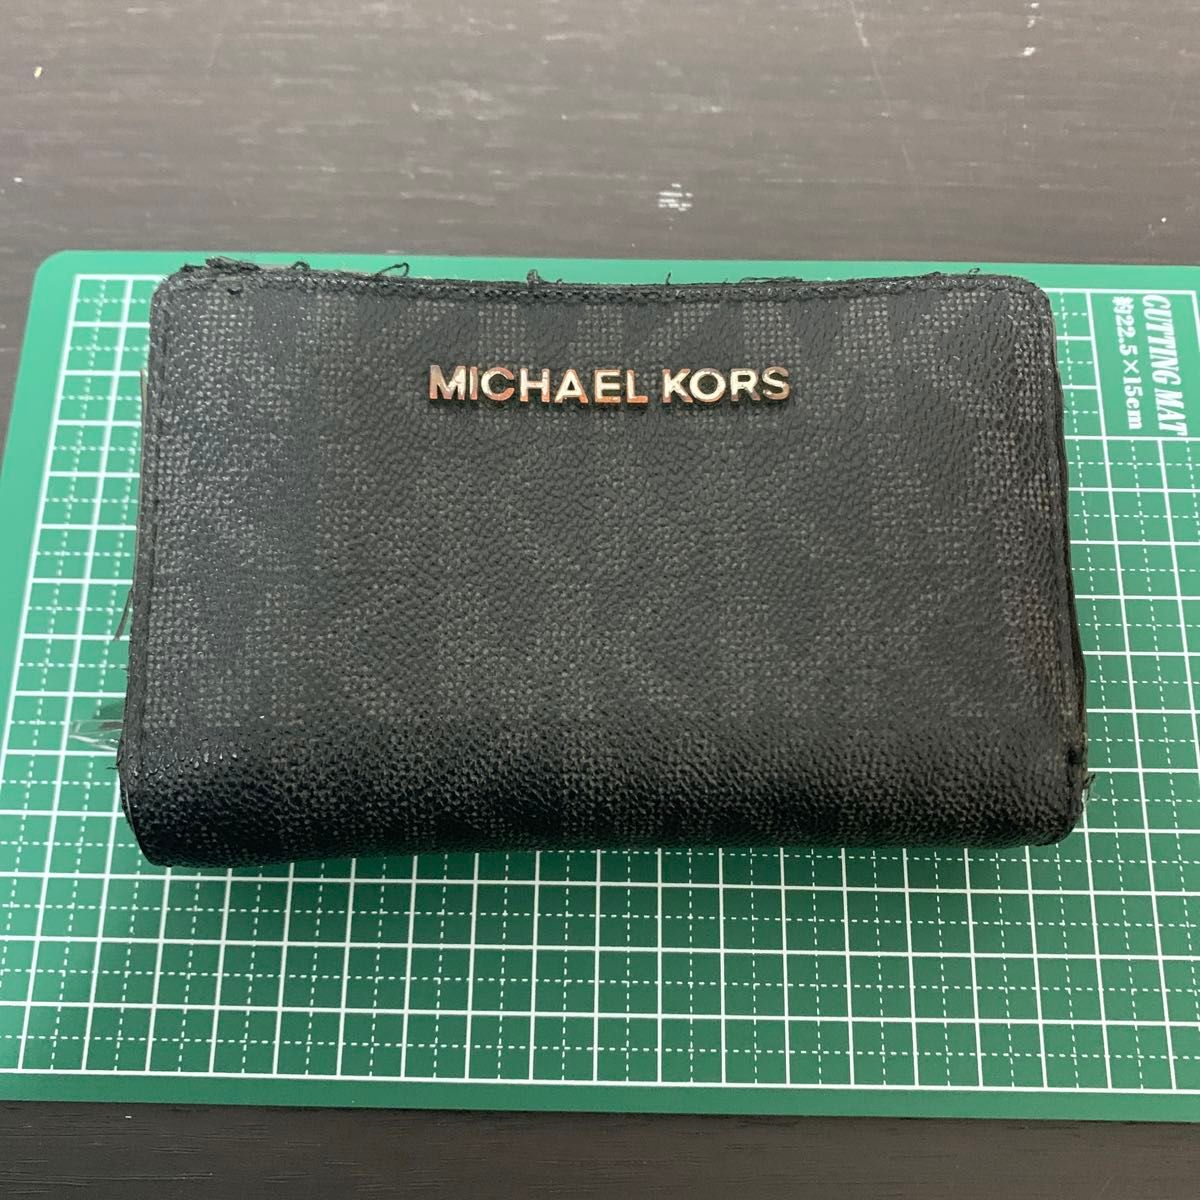 MICHAEL KORS 財布 レザー 小銭入れ 札入れ マイケルコース ブラック 二つ折り財布